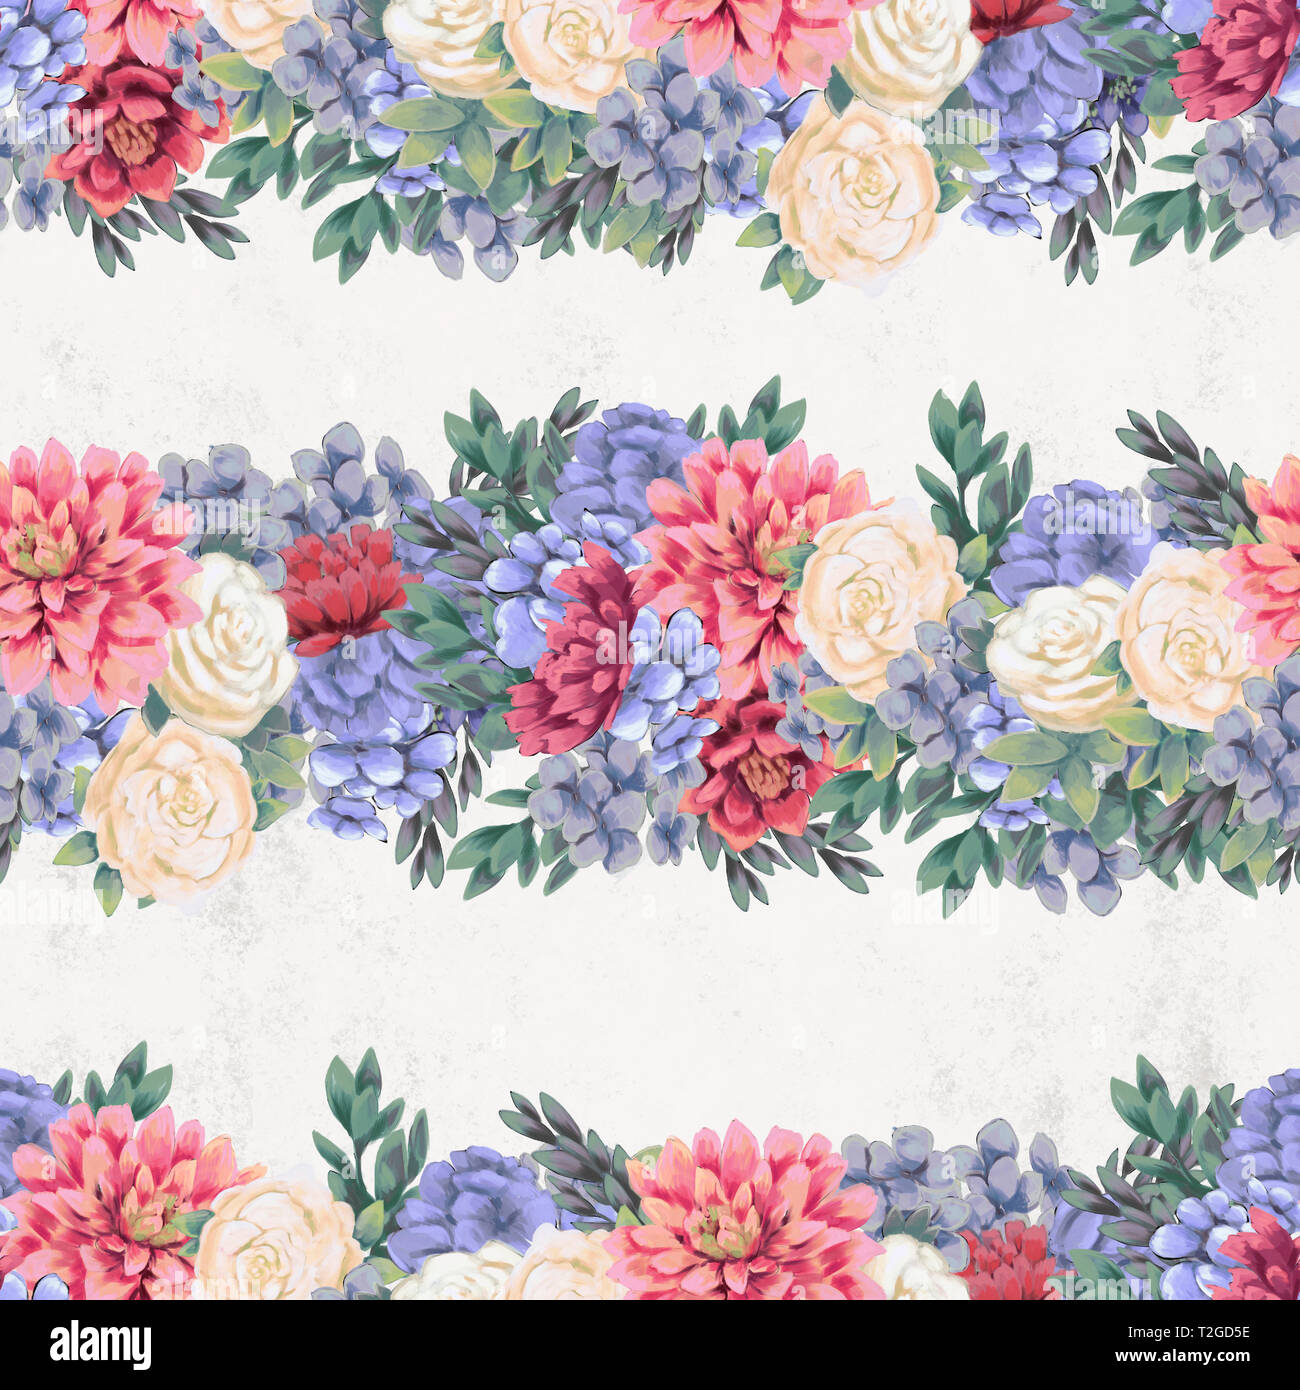 Vintage Floral pattern transparente. La main rose, bleu et blanc de printemps des fleurs et des feuilles pour le tissu Banque D'Images